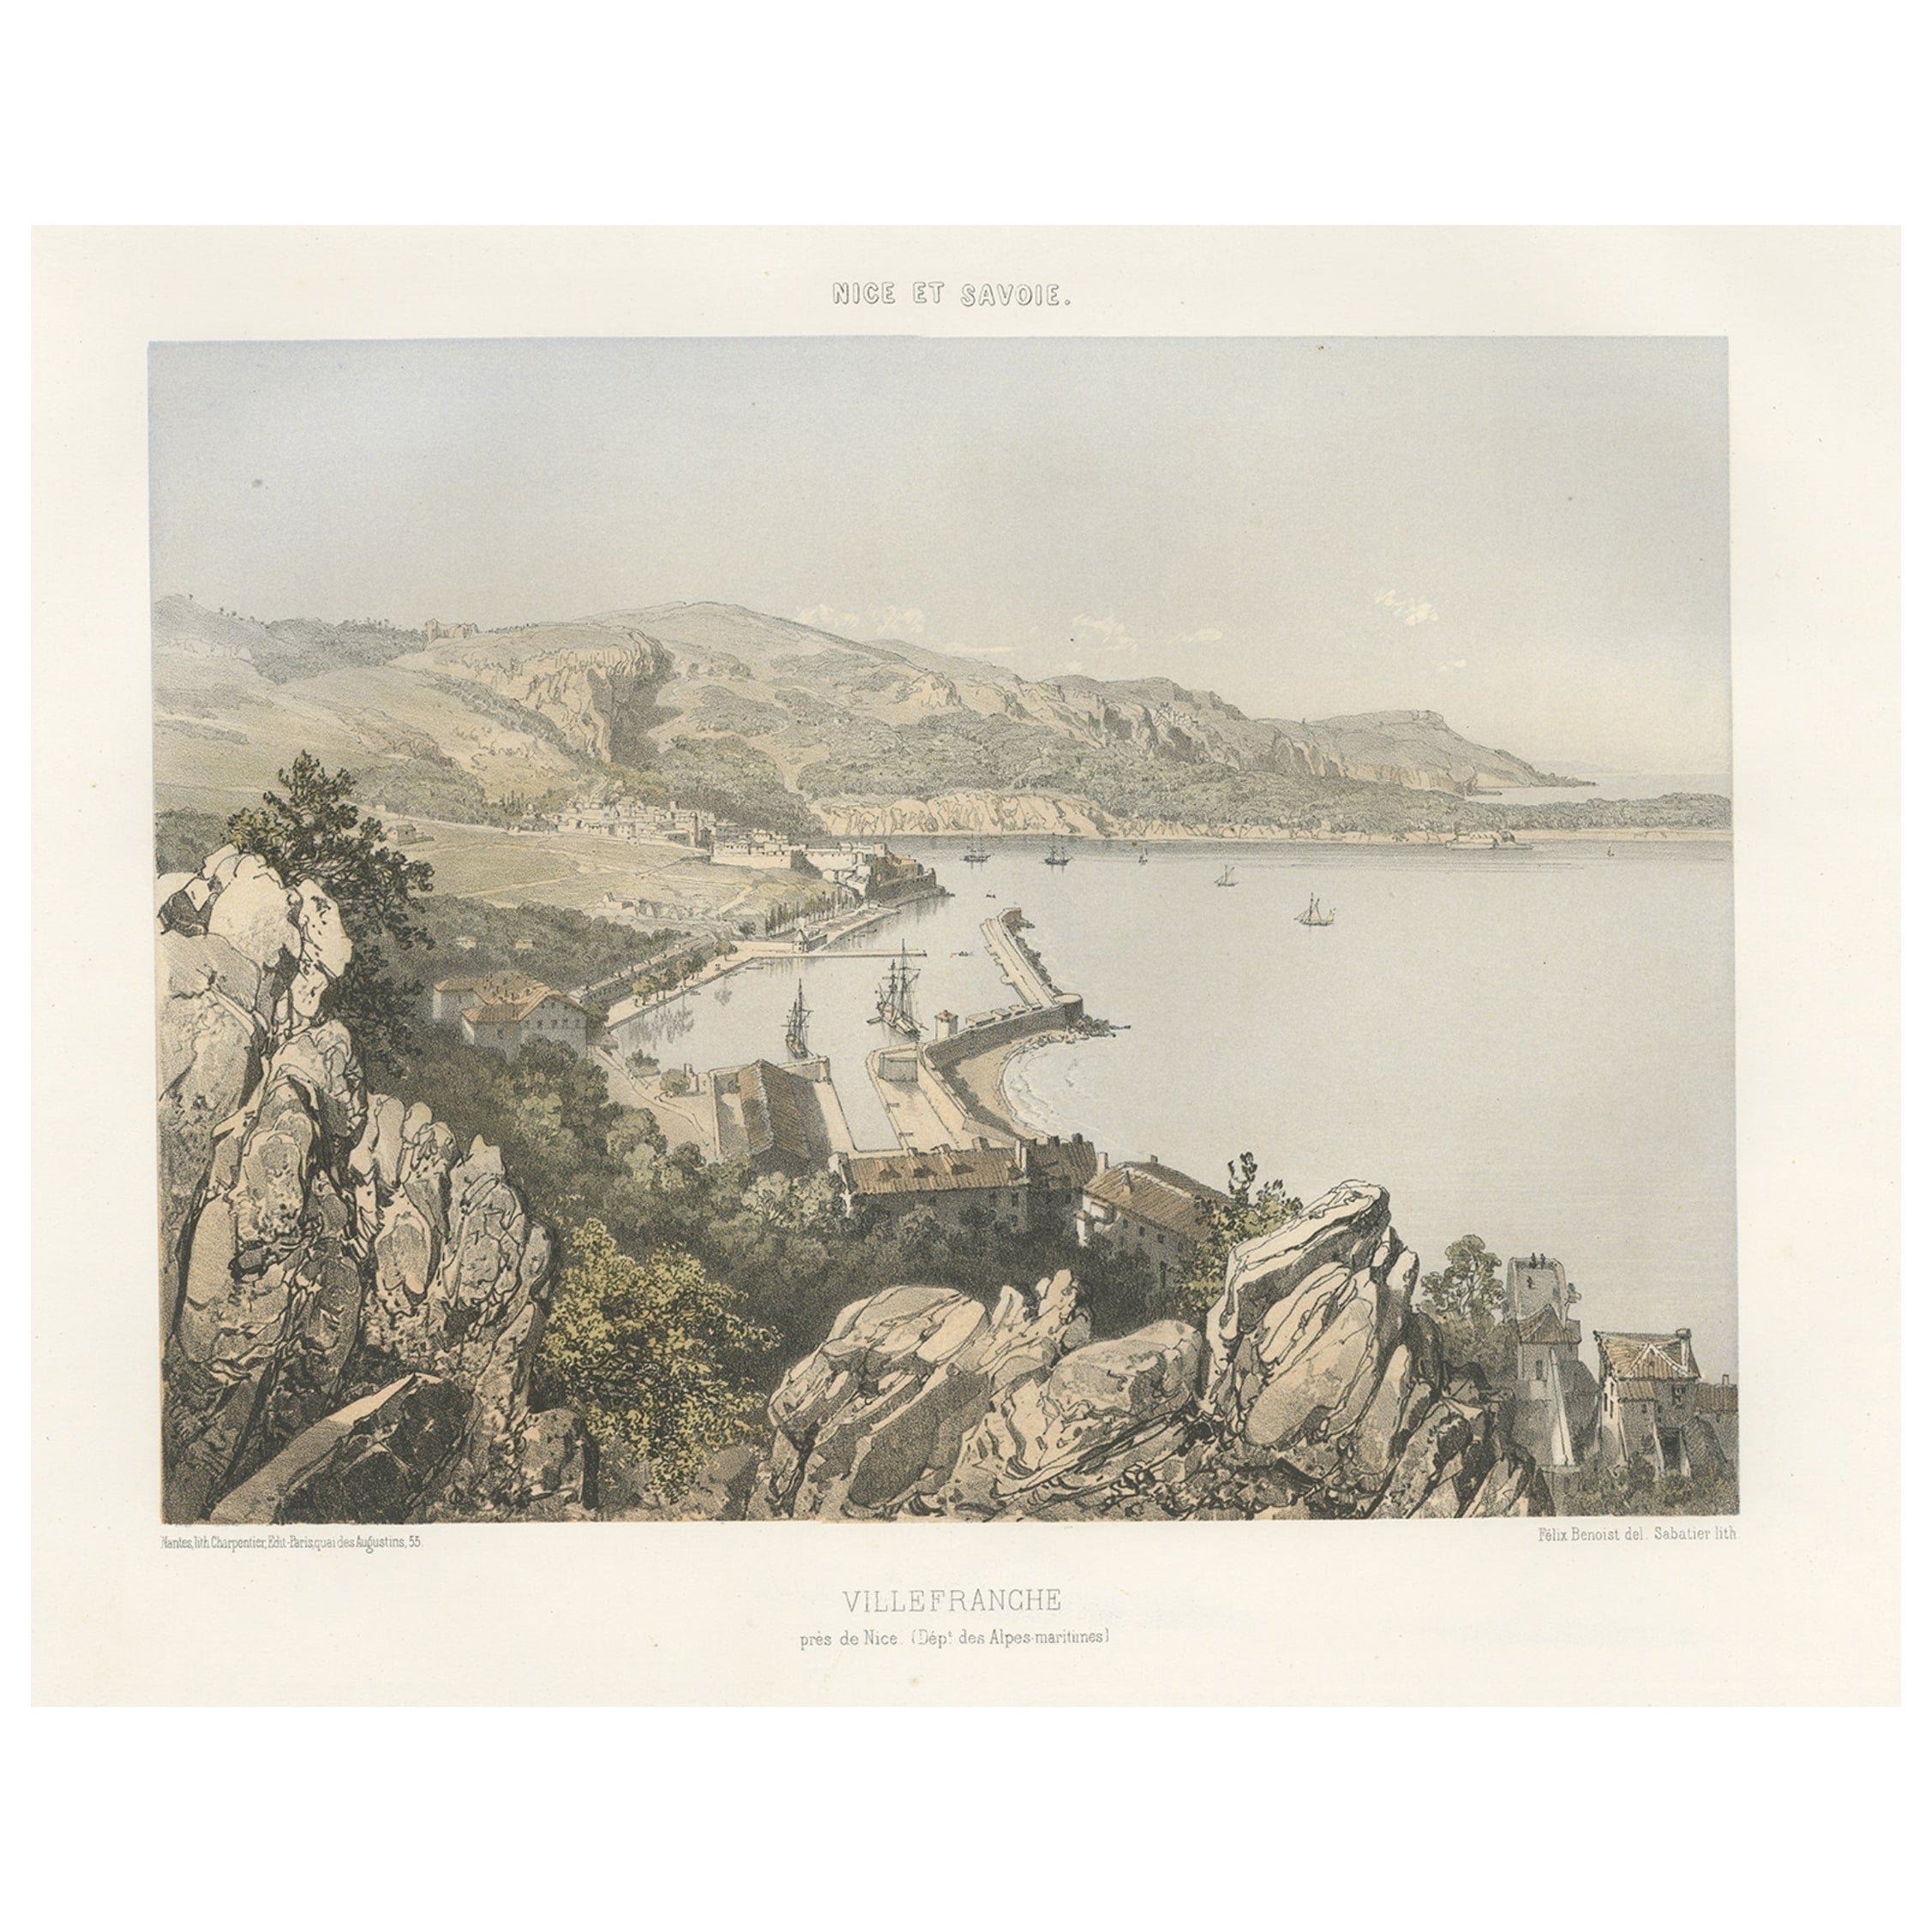 Antiquité de Villefranche dans la région de Nice et de Savoy en France, c.1865 en vente